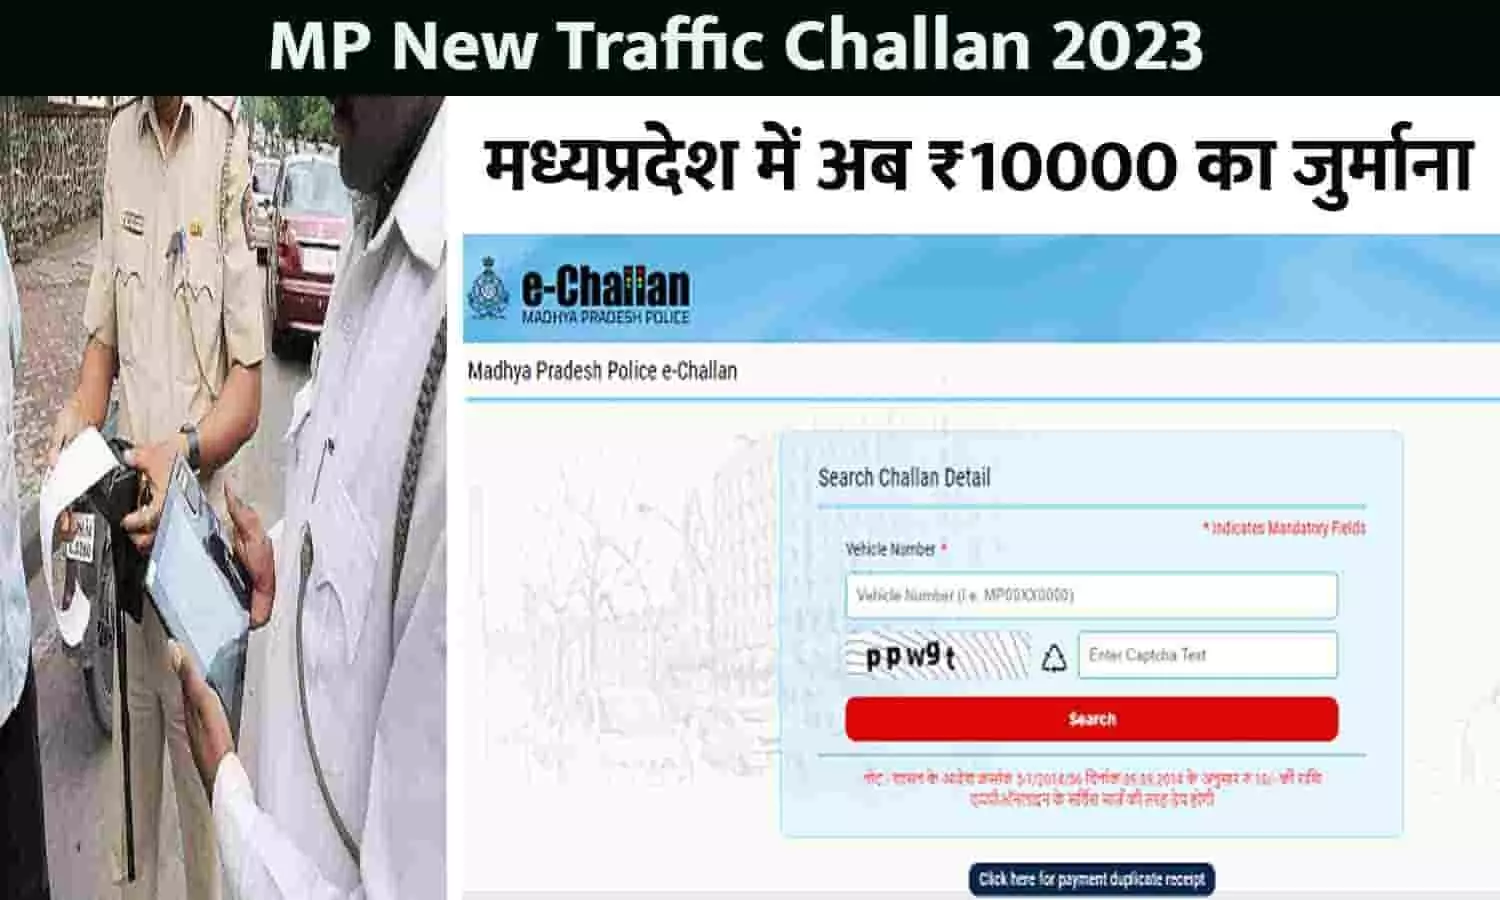 MP New Traffic Challan Rates 2023: सावधान! मध्यप्रदेश में अब ₹10000 का जुर्माना